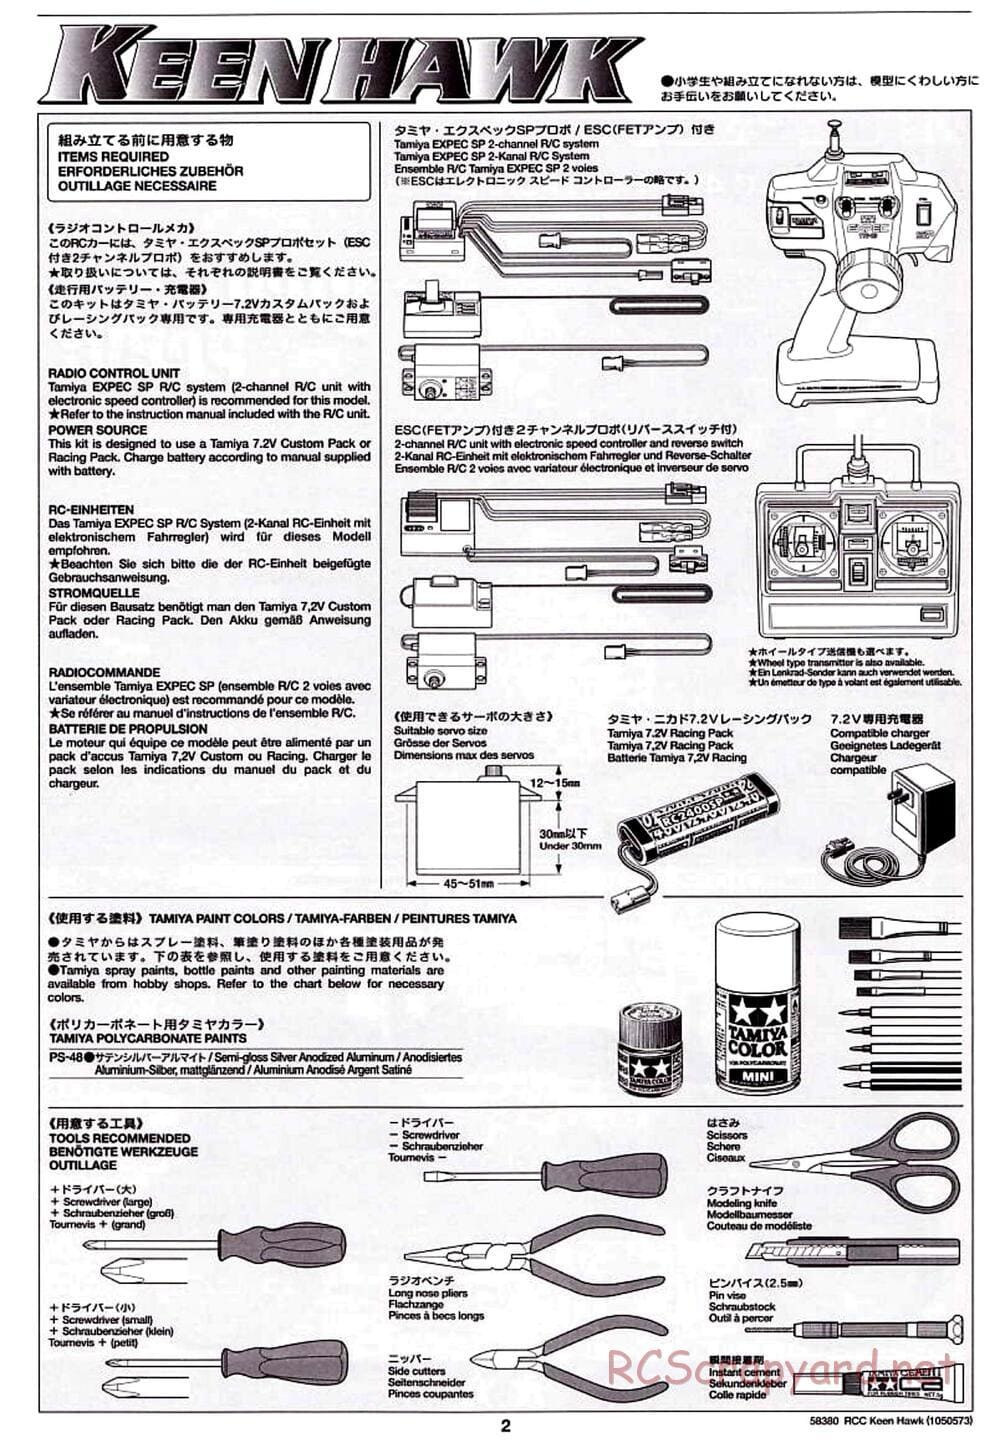 Tamiya - Keen Hawk Chassis - Manual - Page 2